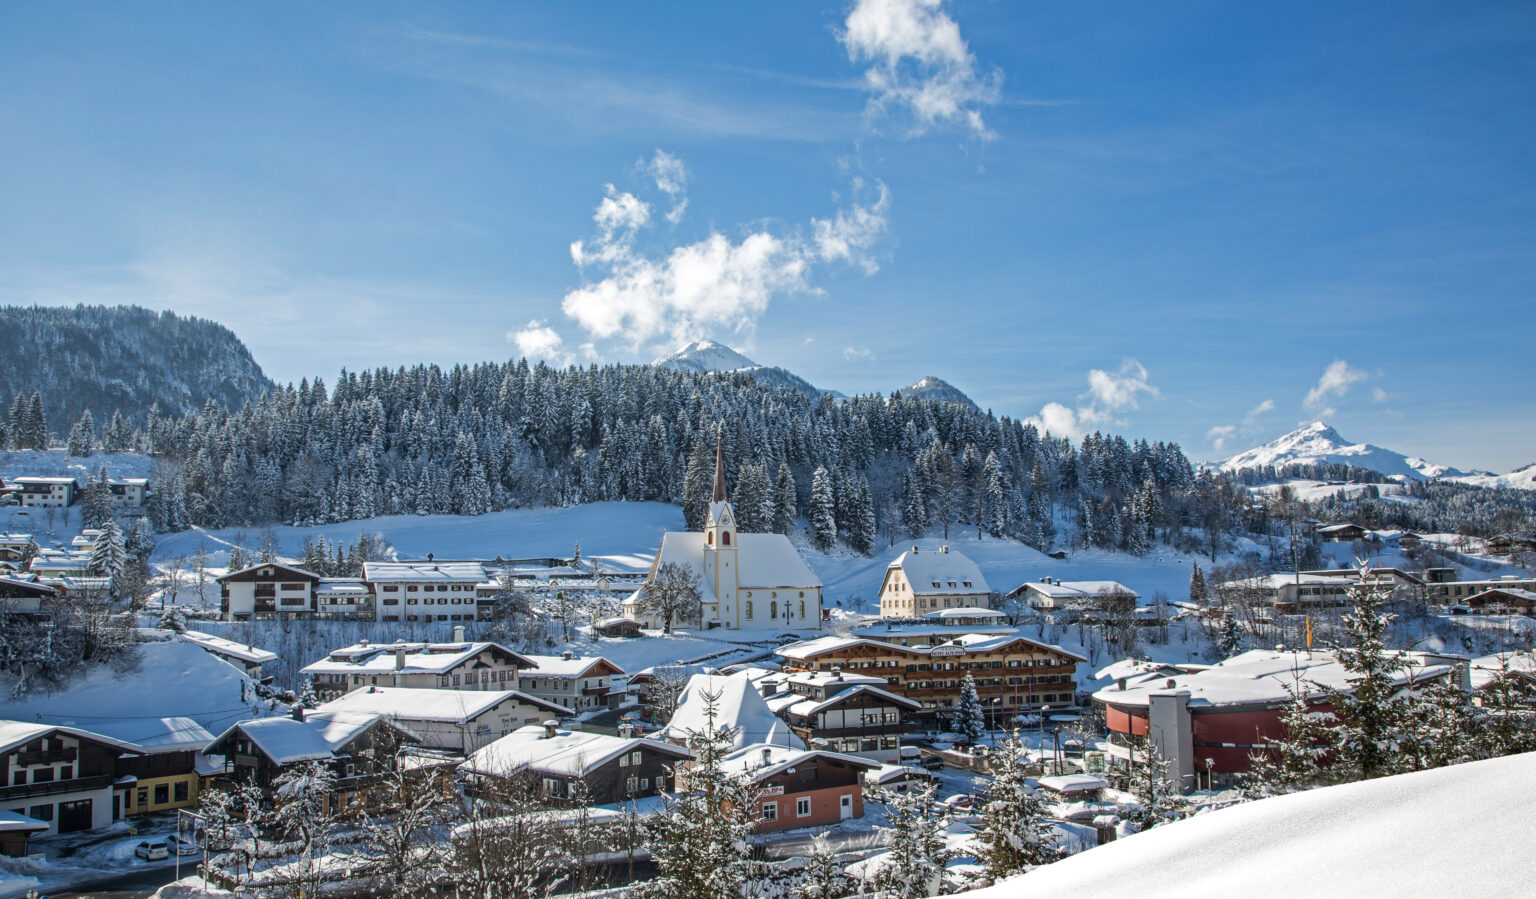 Fieberbrunn im Winter: Ein idyllischer Ort im Schnee